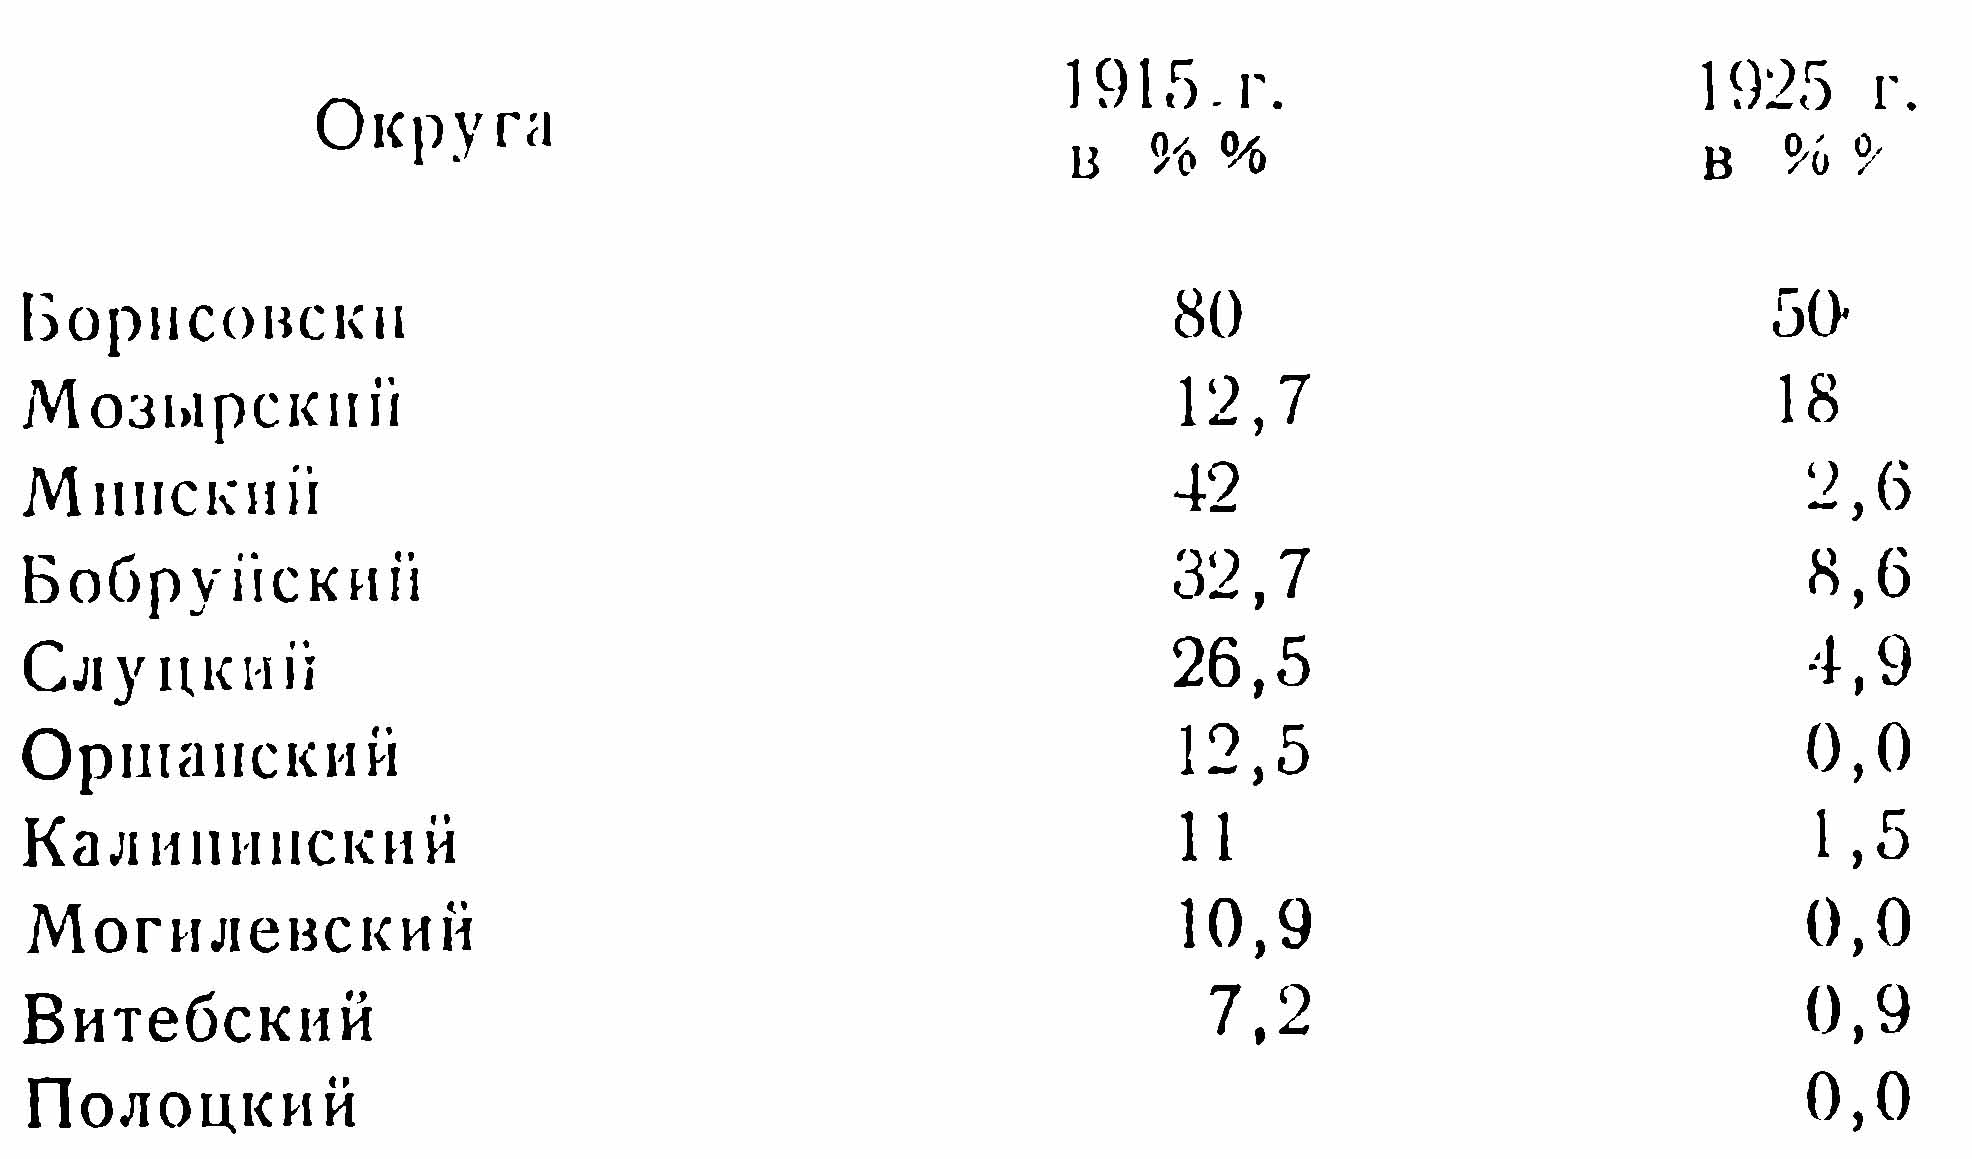 Таблица № 5. Процент распространения лосей в Белоруссии в 1915 и 1925 гг.